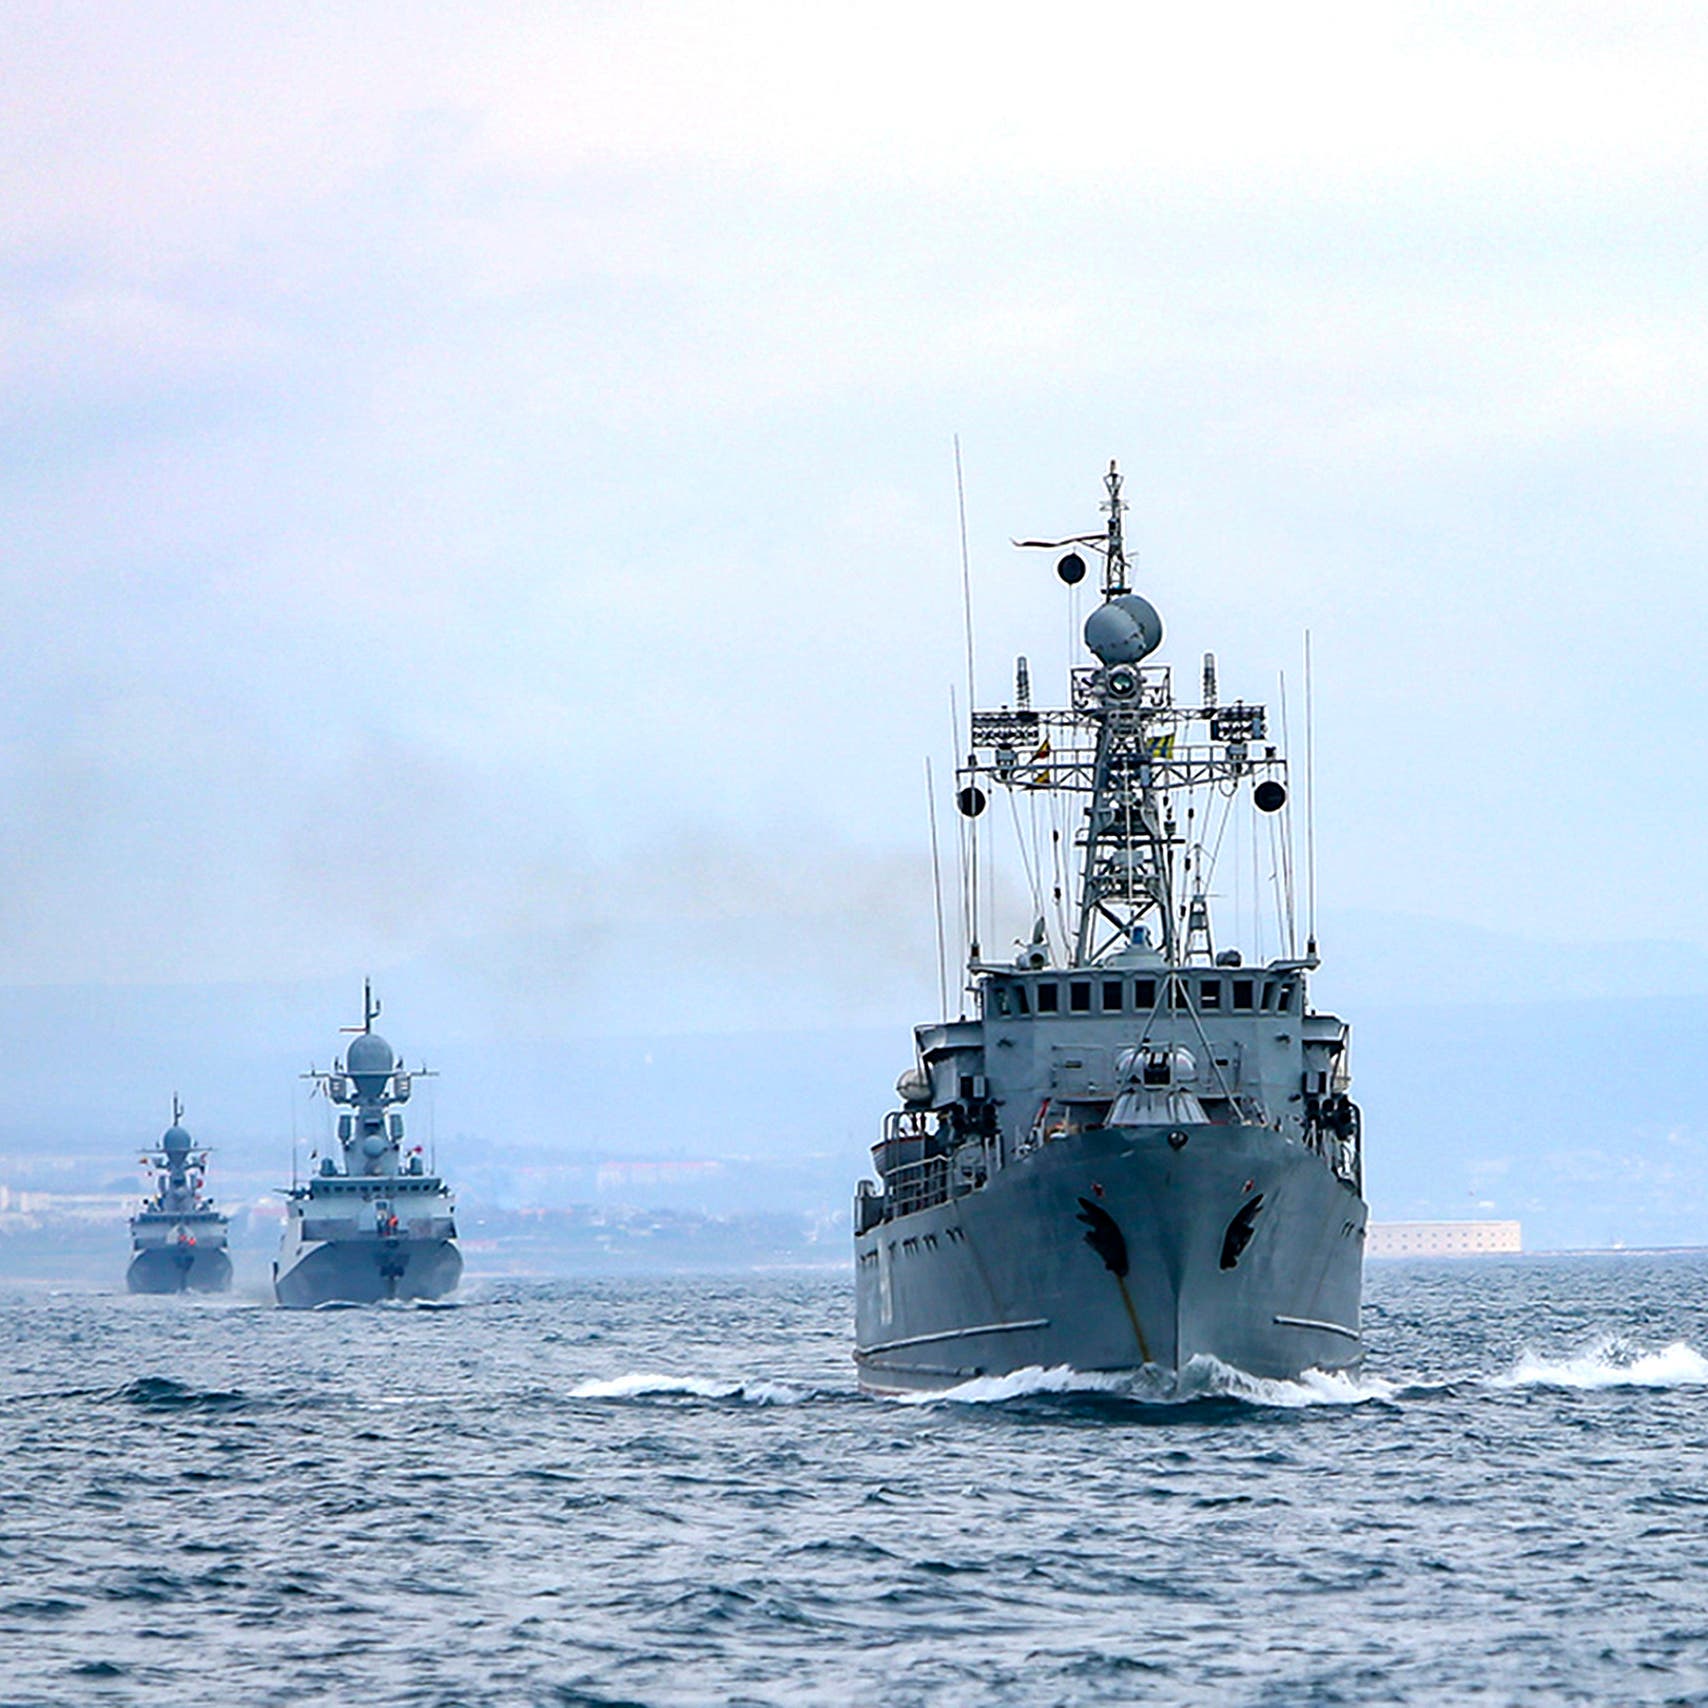 كييف: أكثر من 70 سفينة محاصرة في موانئنا بسبب روسيا